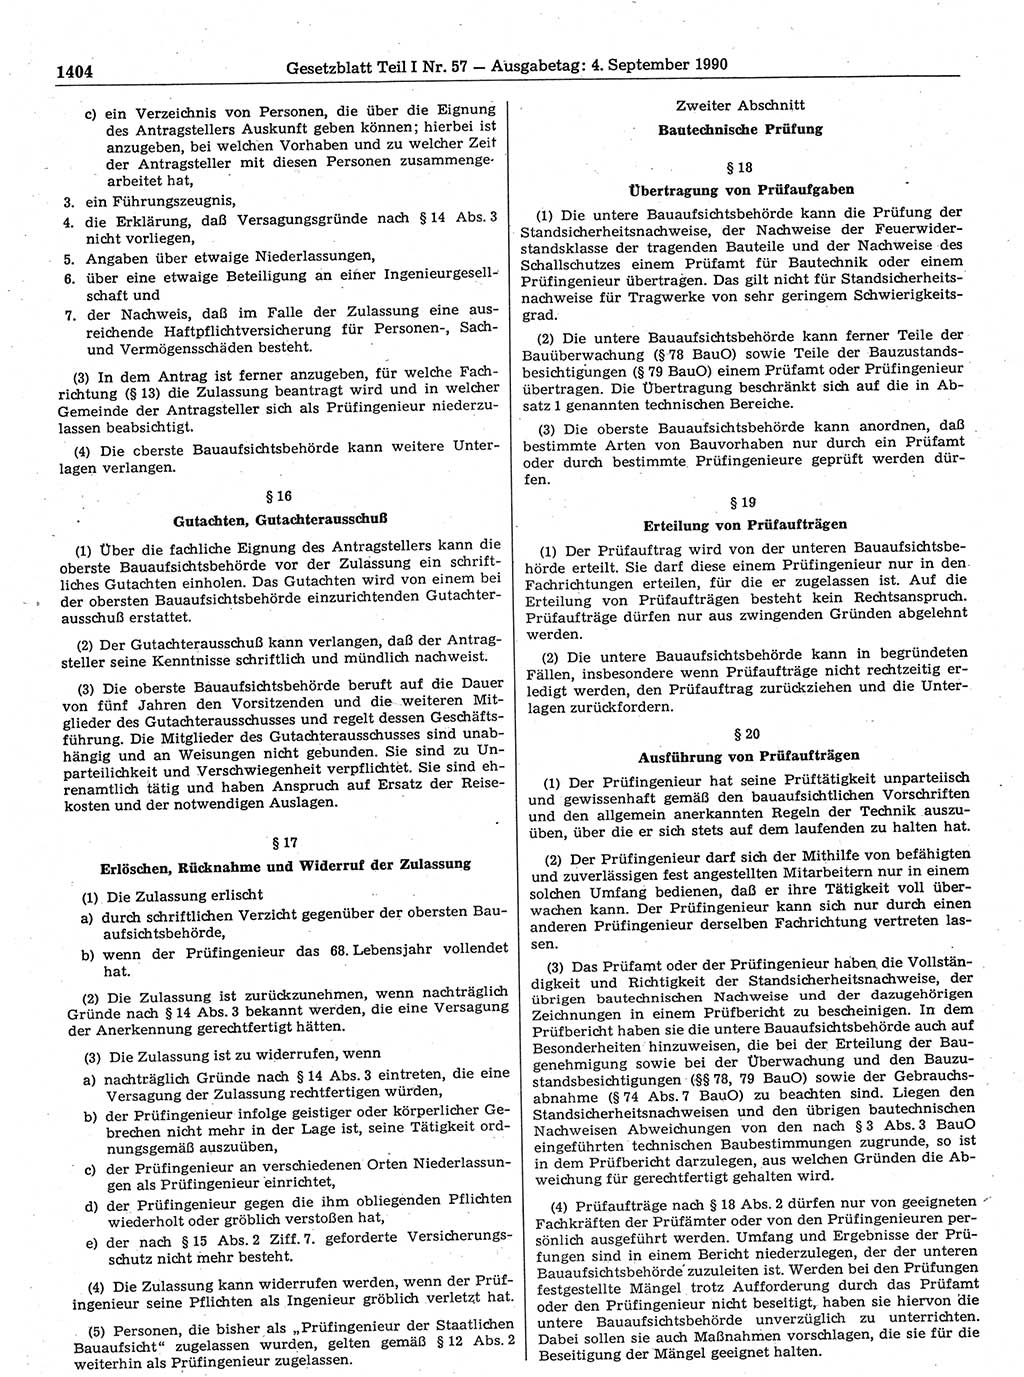 Gesetzblatt (GBl.) der Deutschen Demokratischen Republik (DDR) Teil Ⅰ 1990, Seite 1404 (GBl. DDR Ⅰ 1990, S. 1404)